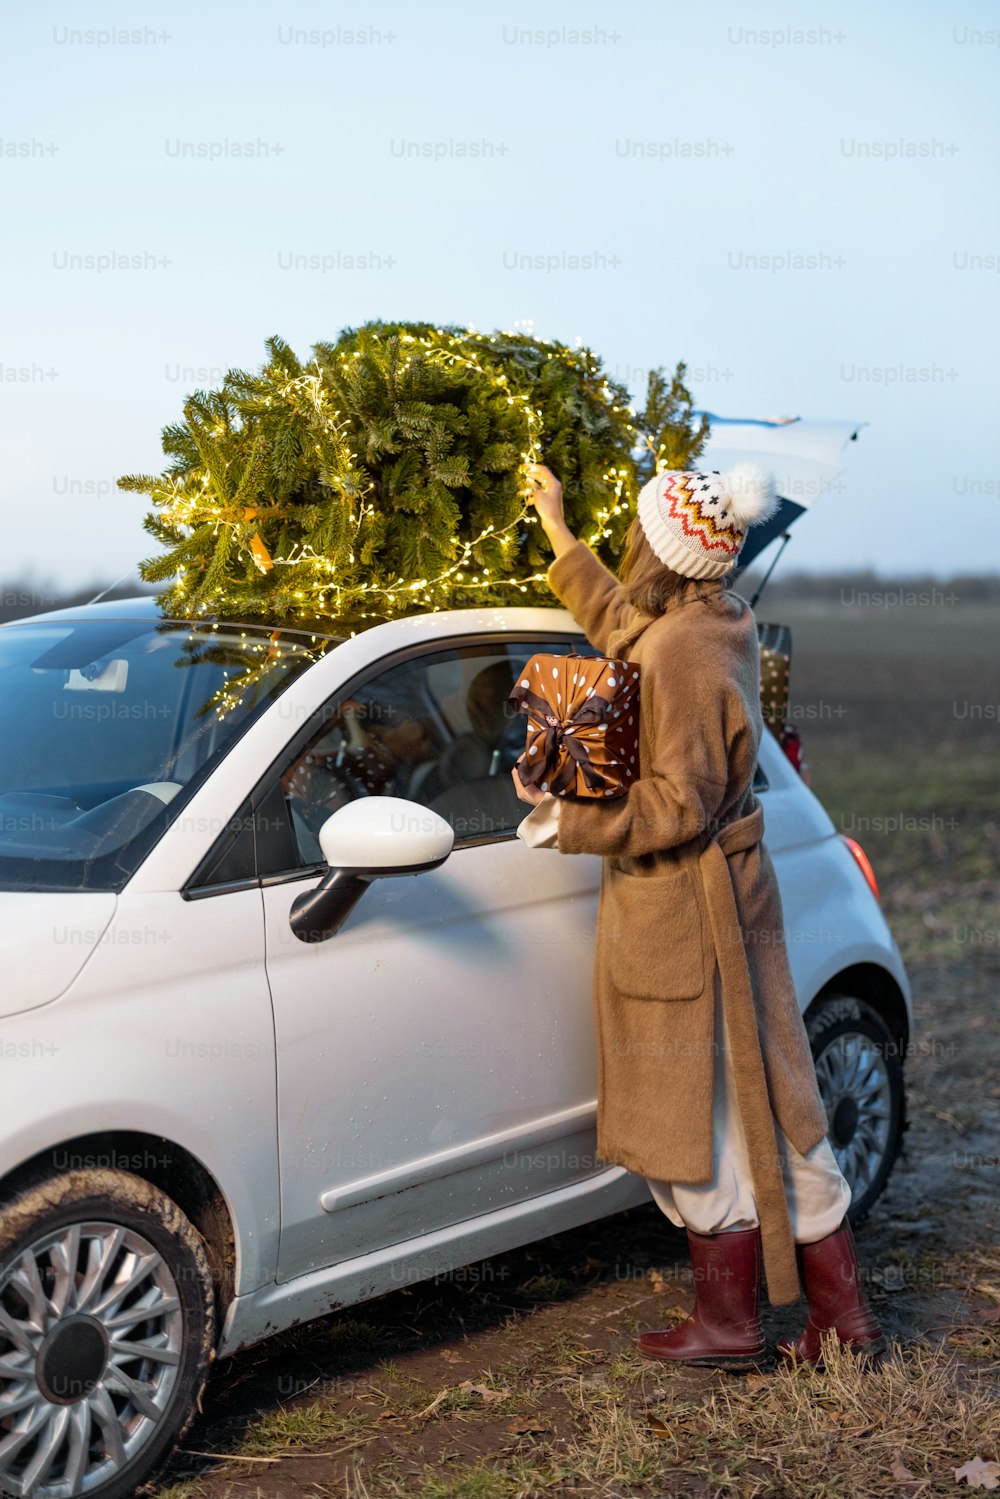 Mulher embalando árvore de Natal em um telhado de seu carro, preparando-se para um feriado. Ideia de clima natalino e comemoração. Mulher vestindo casaco de pele e chapéu. Noite com lindo céu do pôr do sol